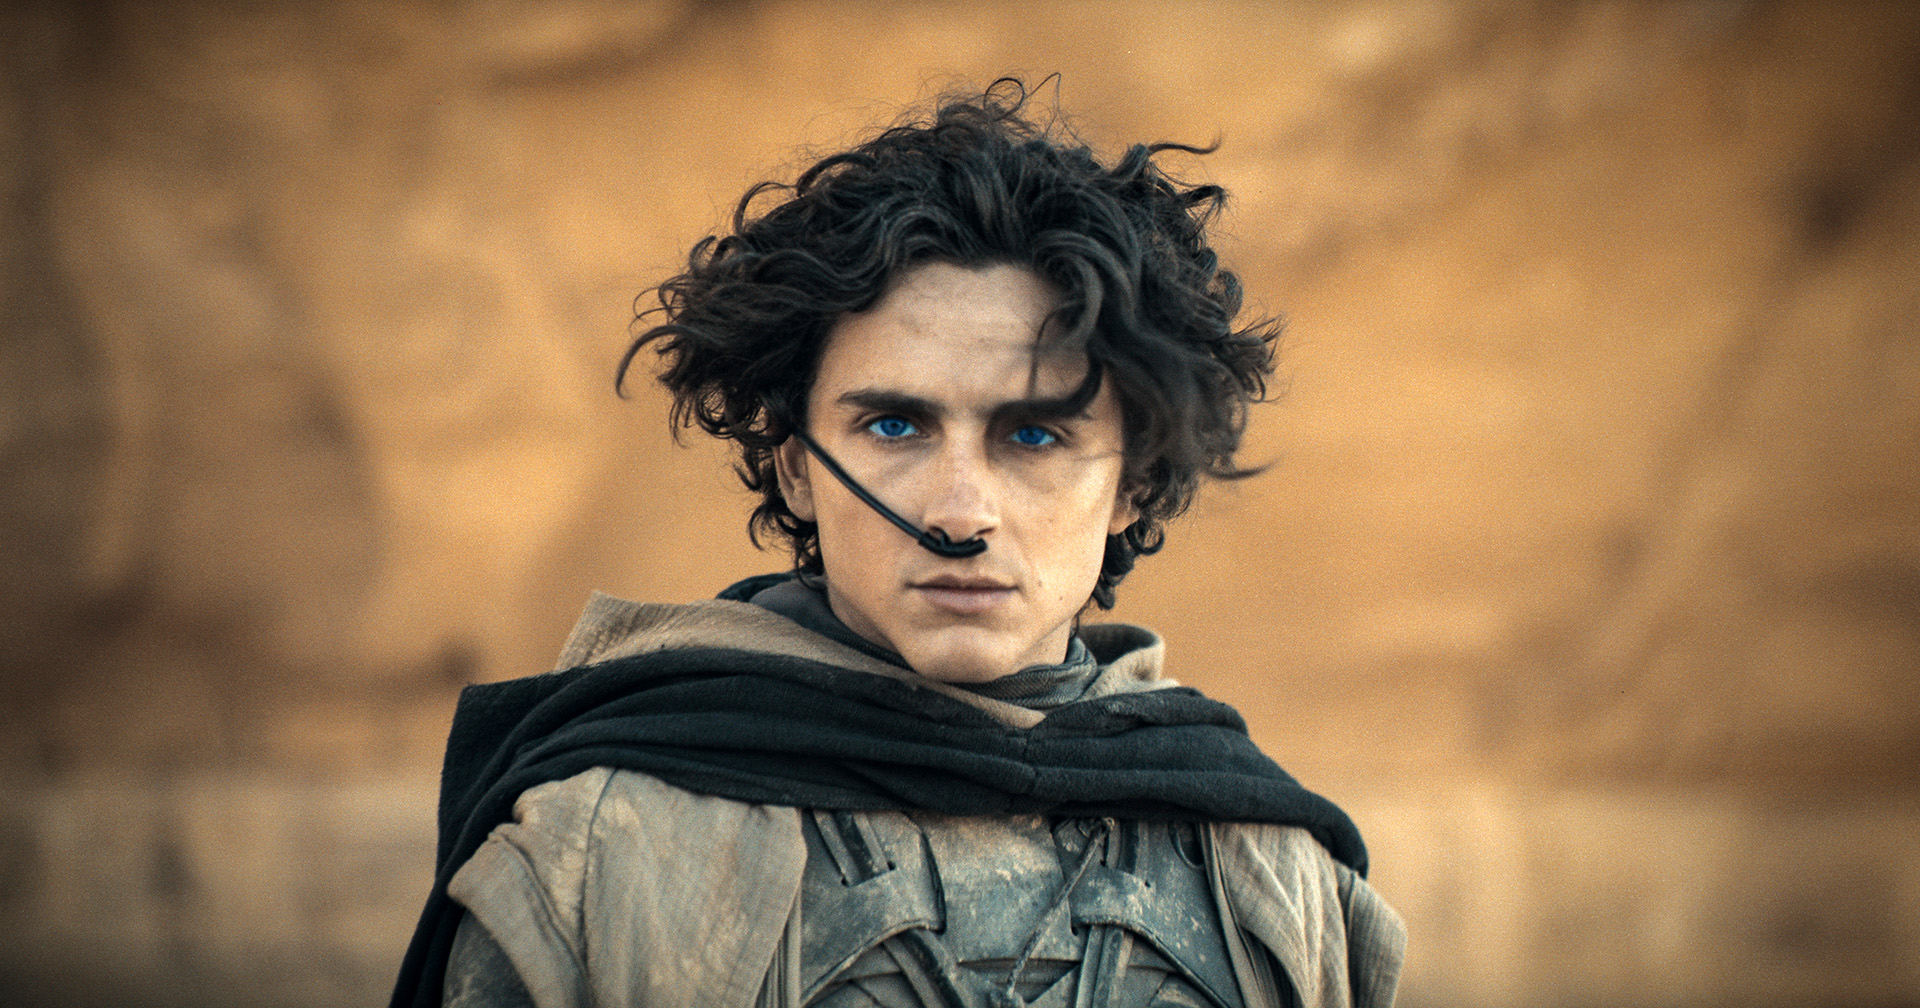 Warner Bros. ประกาศฉายหนังใหม่ของ Denis Villeneuve ในปี 2026: อาจเป็น ‘Dune 3’ ที่เป็นบทสุดท้ายของมหากาพย์ไซไฟนี้